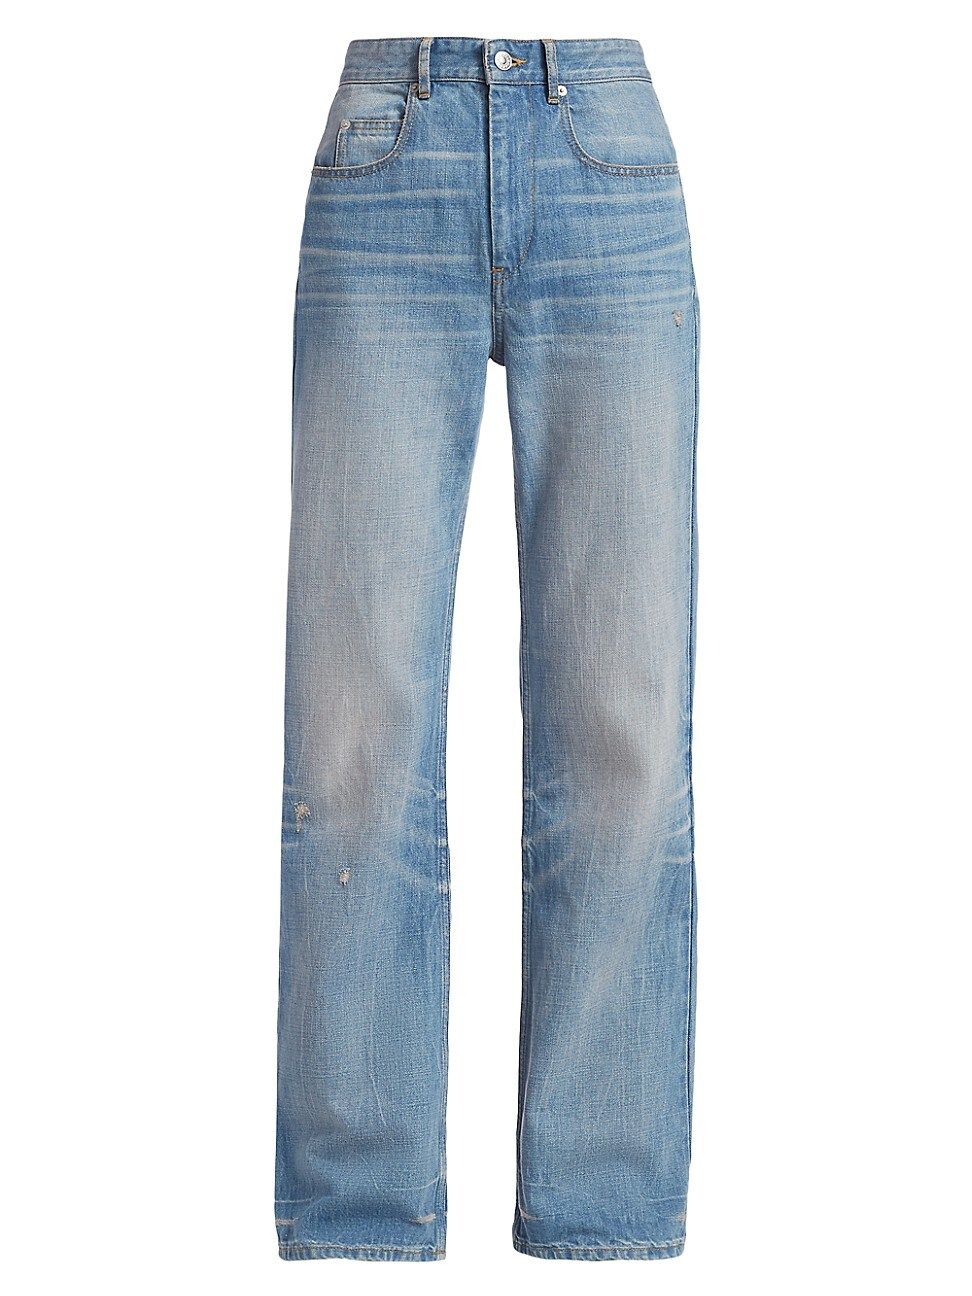 Isabel Marant Etoile Women's Belvira Wide-Leg Jeans - Light Blue - Size 34 (2) | Saks Fifth Avenue